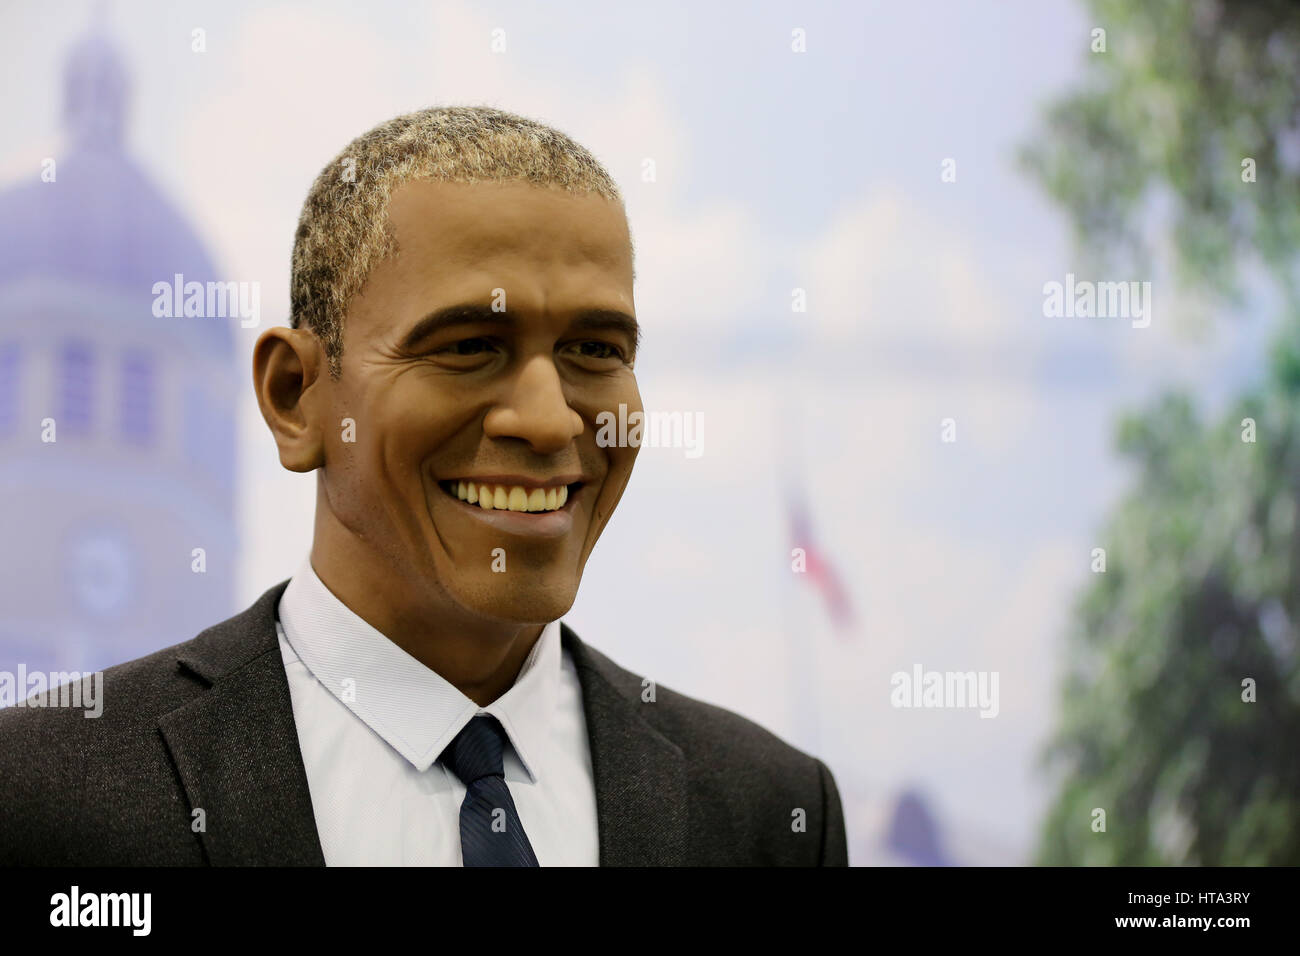 La société Shenyang Blower, la Chine. Mar 9, 2017. Une figure de cire de Barack Obama lors d'une expo à Shenyang, au nord-est de la Chine. Figures de cire de Chinois et des célébrités internationales peut être vu à une expo à Shenyang, Liaoning Province du nord-est de la Chine, Mars 9th, 2017. Crédit : SIPA Asie/ZUMA/Alamy Fil Live News Banque D'Images